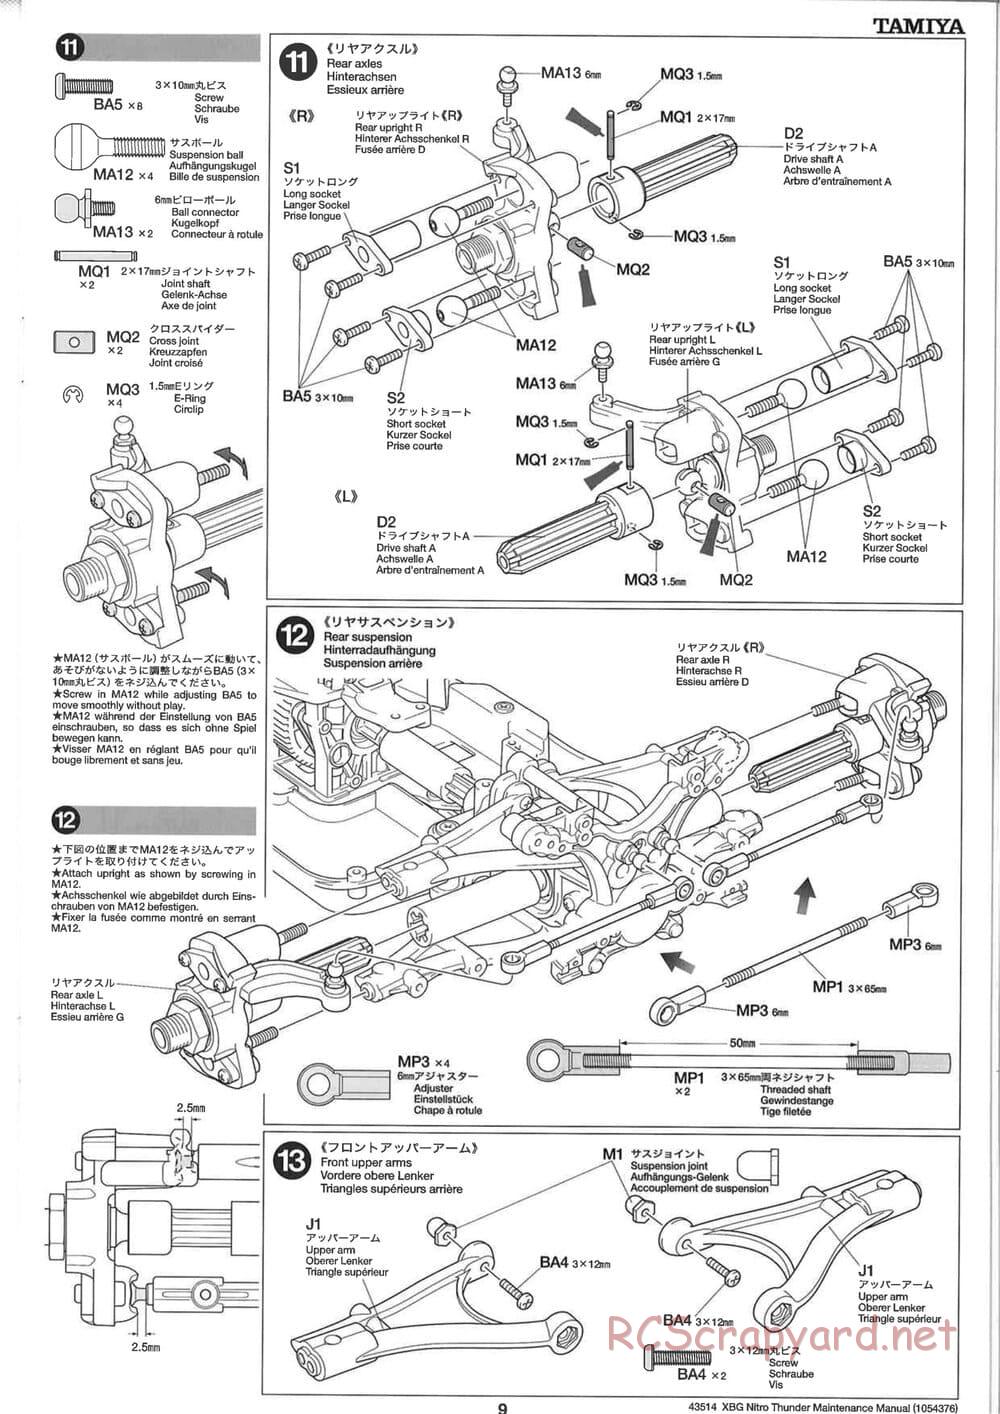 Tamiya - Nitro Thunder - NDF-01 Chassis - Manual - Page 9